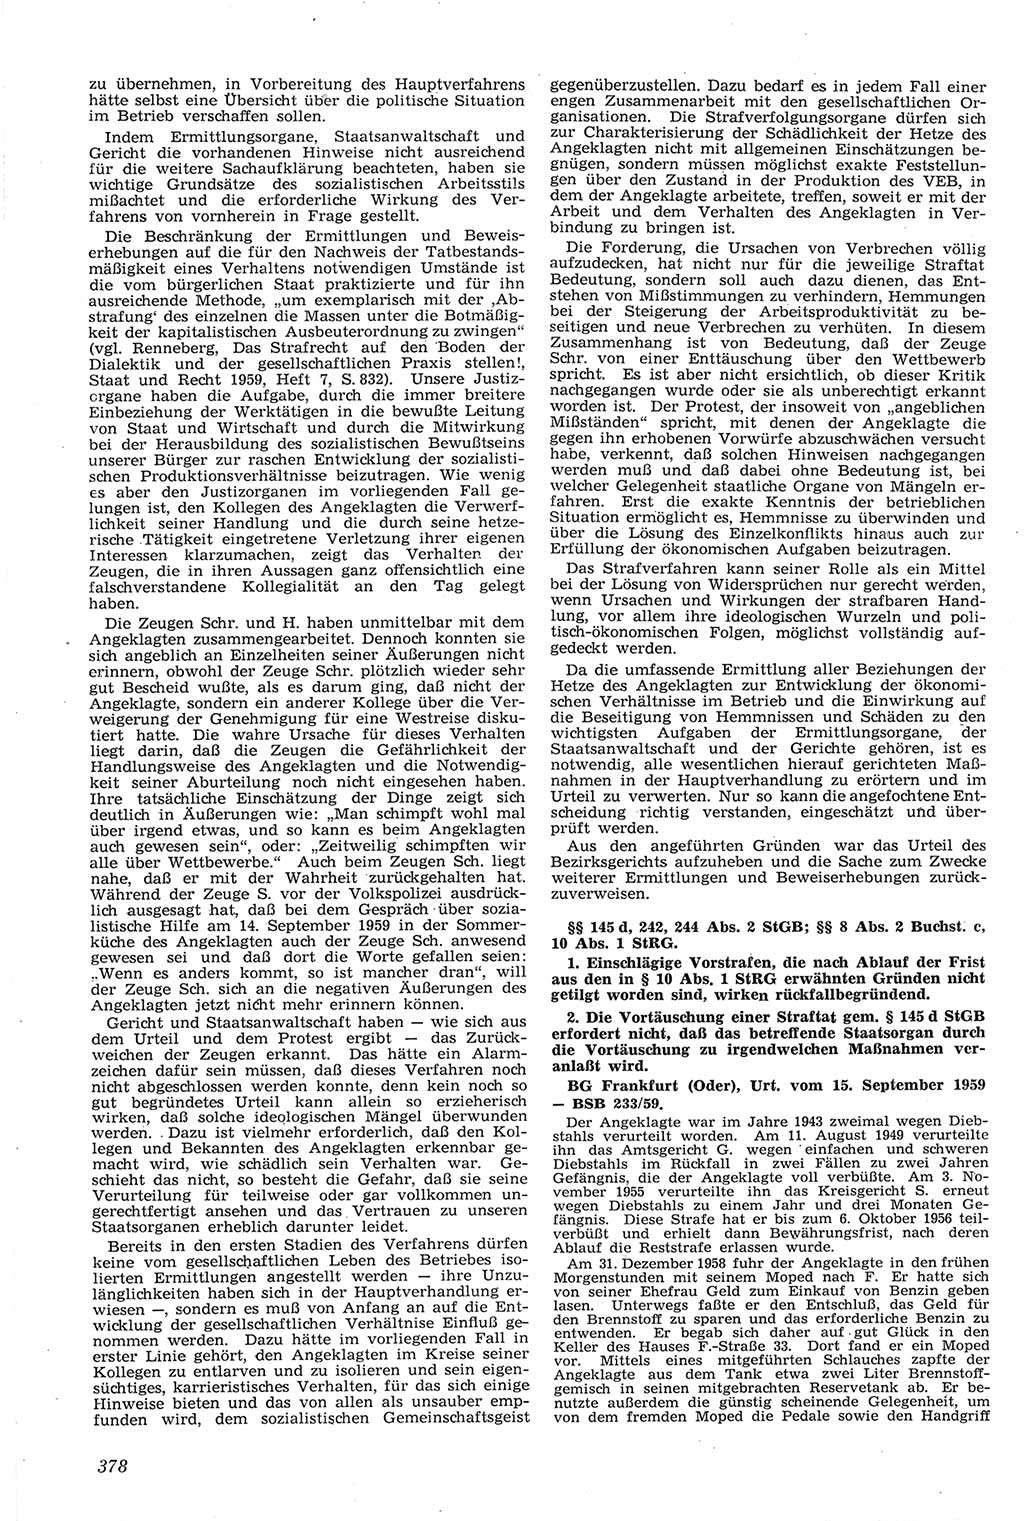 Neue Justiz (NJ), Zeitschrift für Recht und Rechtswissenschaft [Deutsche Demokratische Republik (DDR)], 14. Jahrgang 1960, Seite 378 (NJ DDR 1960, S. 378)